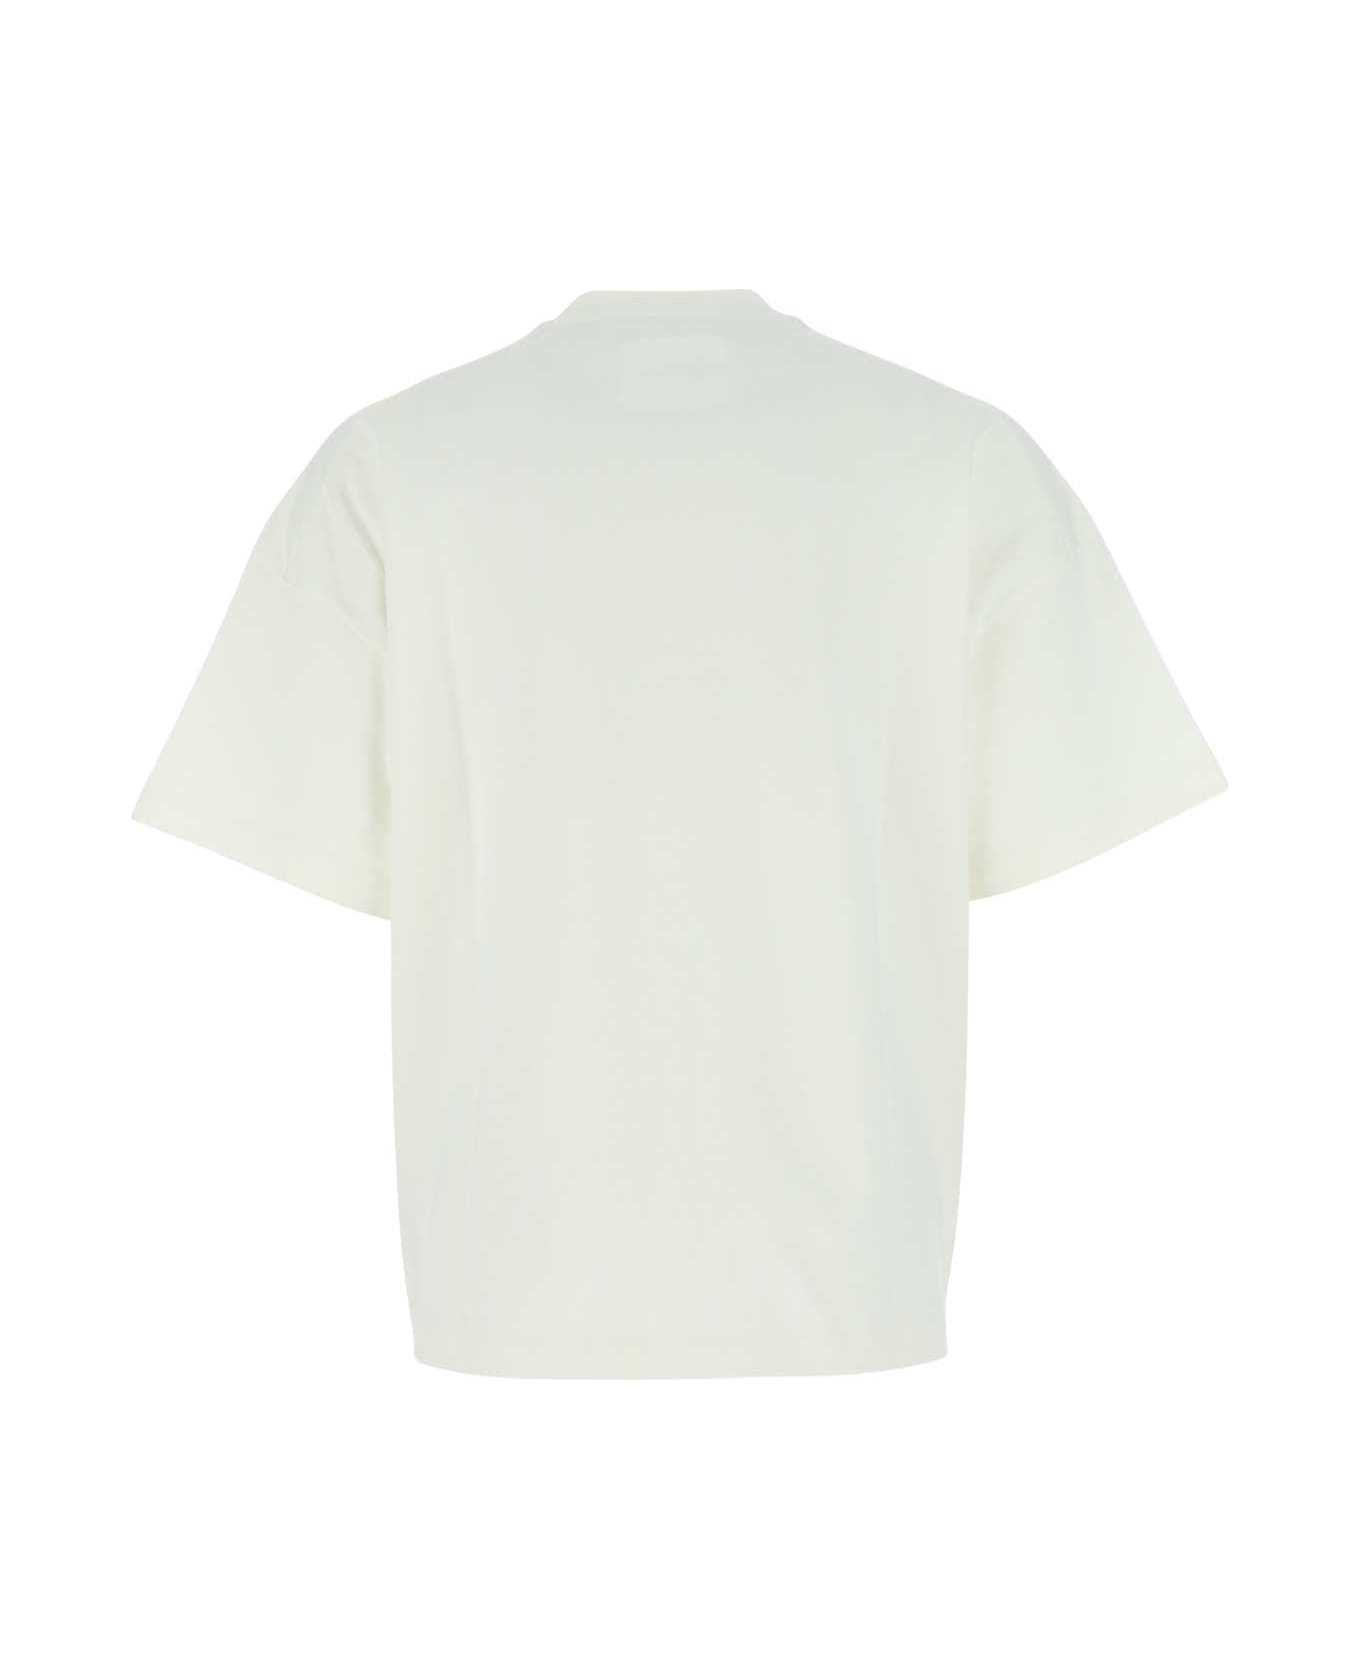 Jil Sander Ivory Cotton Oversize T-shirt - 102